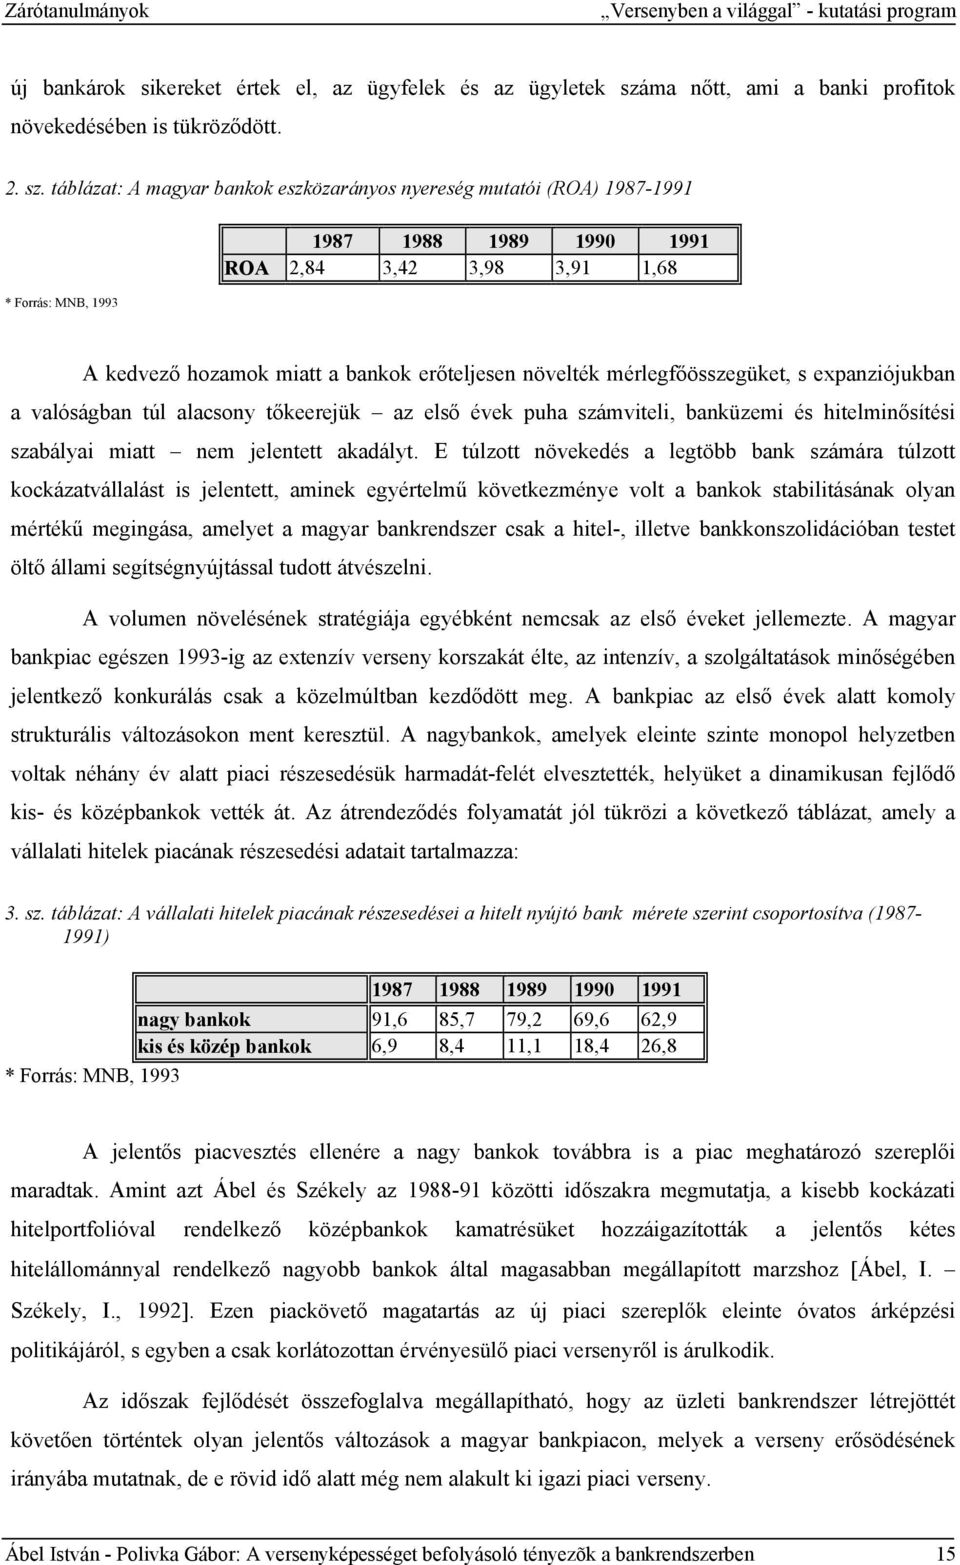 táblázat: A magyar bankok eszközarányos nyereség mutatói (ROA) 1987-1991 * Forrás: MNB, 1993 1987 1988 1989 1990 1991 ROA 2,84 3,42 3,98 3,91 1,68 A kedvező hozamok miatt a bankok erőteljesen